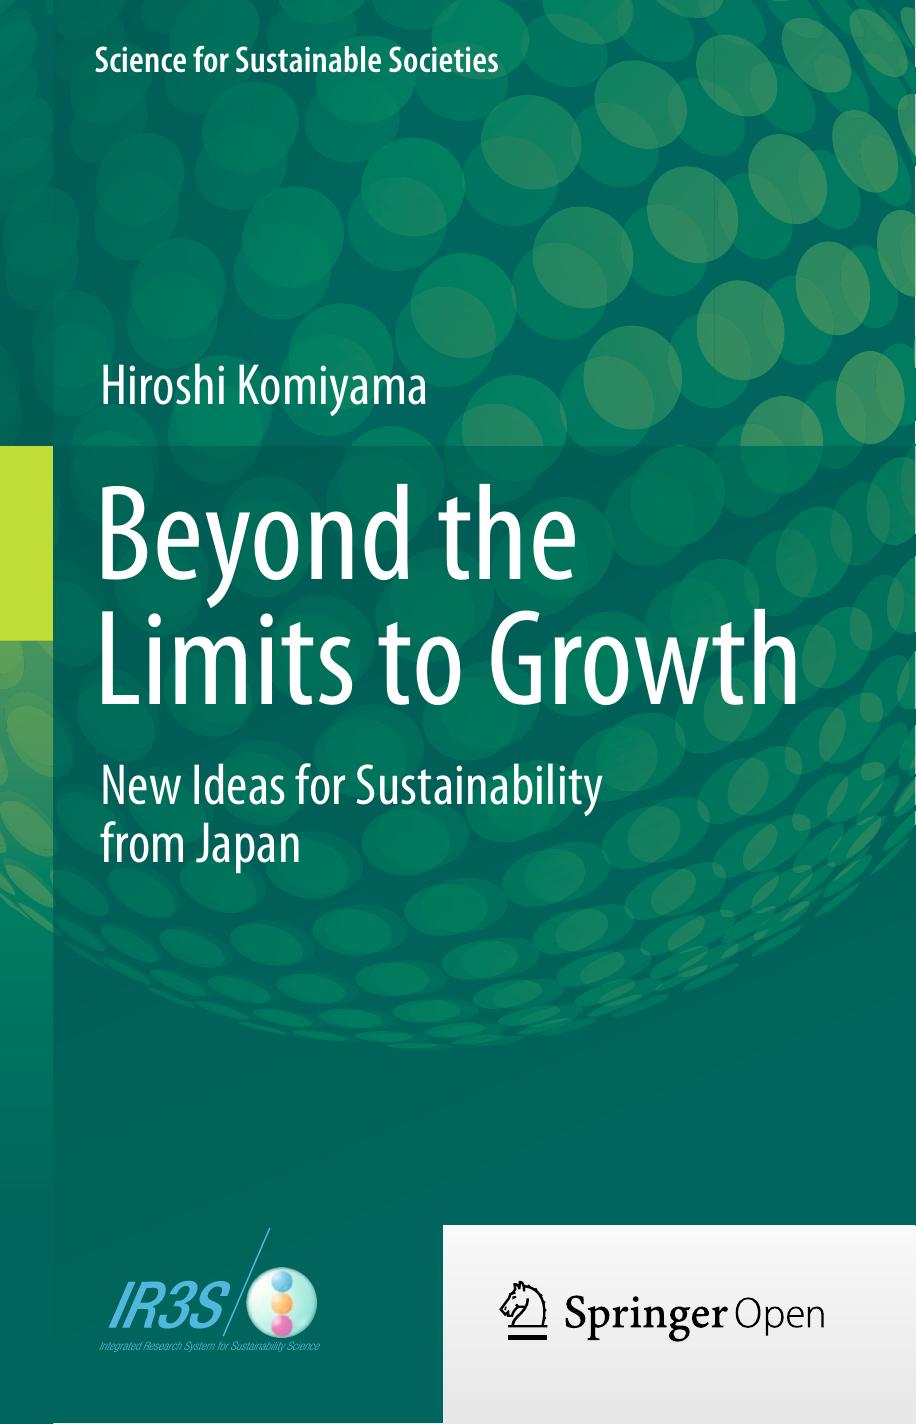 Beyond the Limits to Growth by Hiroshi Komiyama